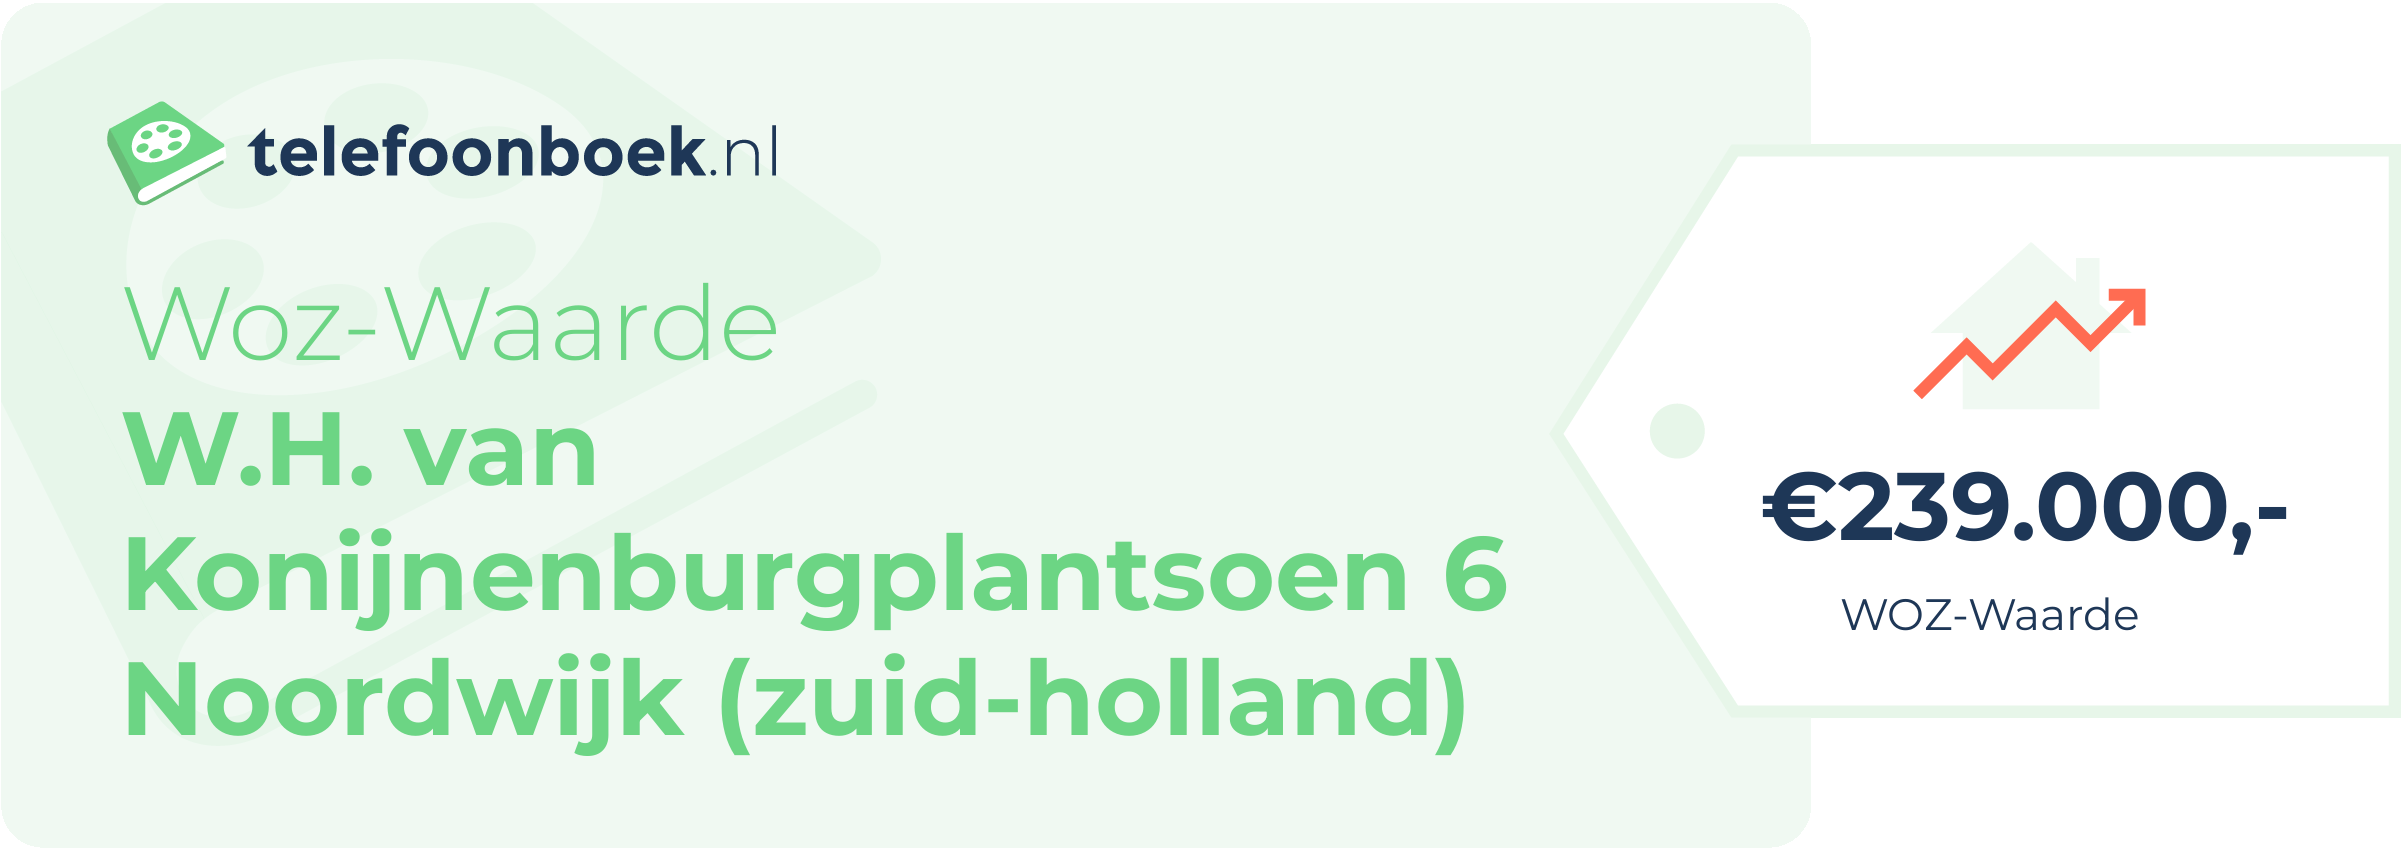 WOZ-waarde W.H. Van Konijnenburgplantsoen 6 Noordwijk (Zuid-Holland)